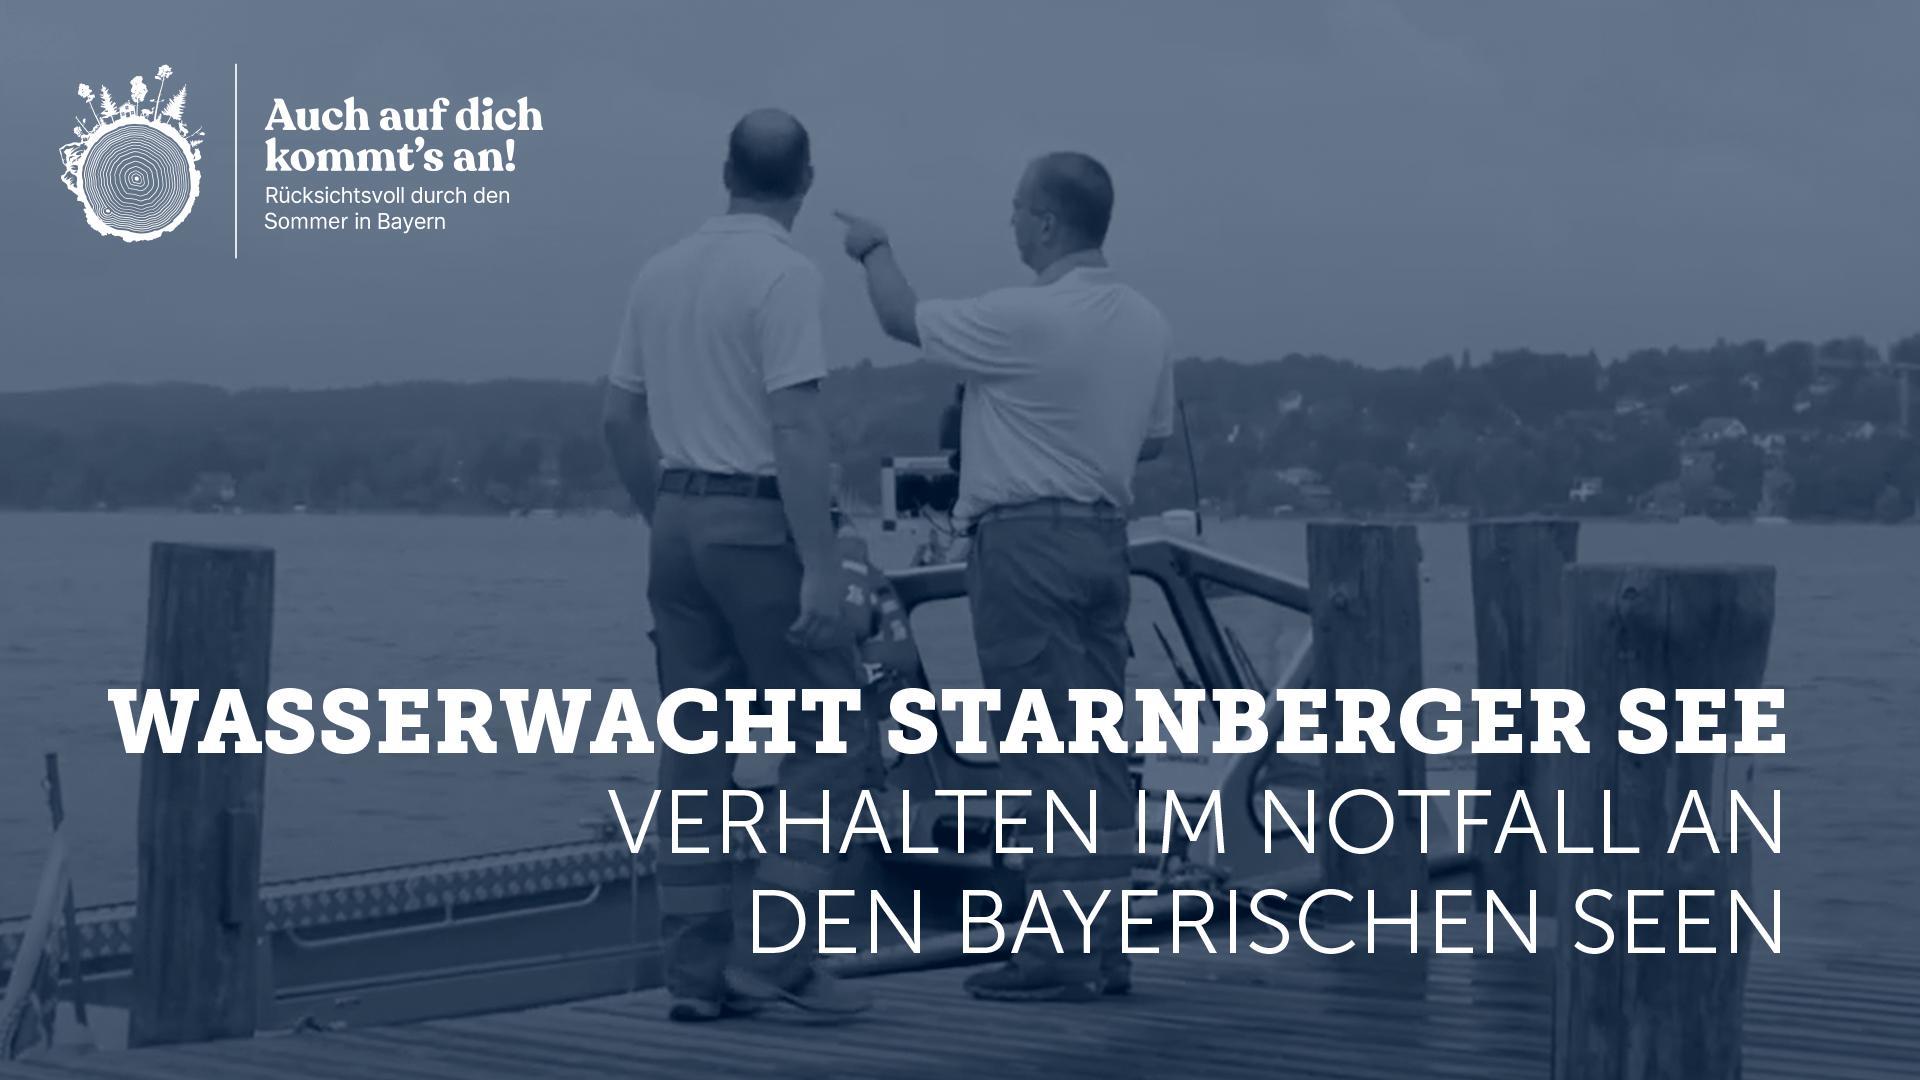 Video: Verhalten im Notfall an den Bayerischen Seen